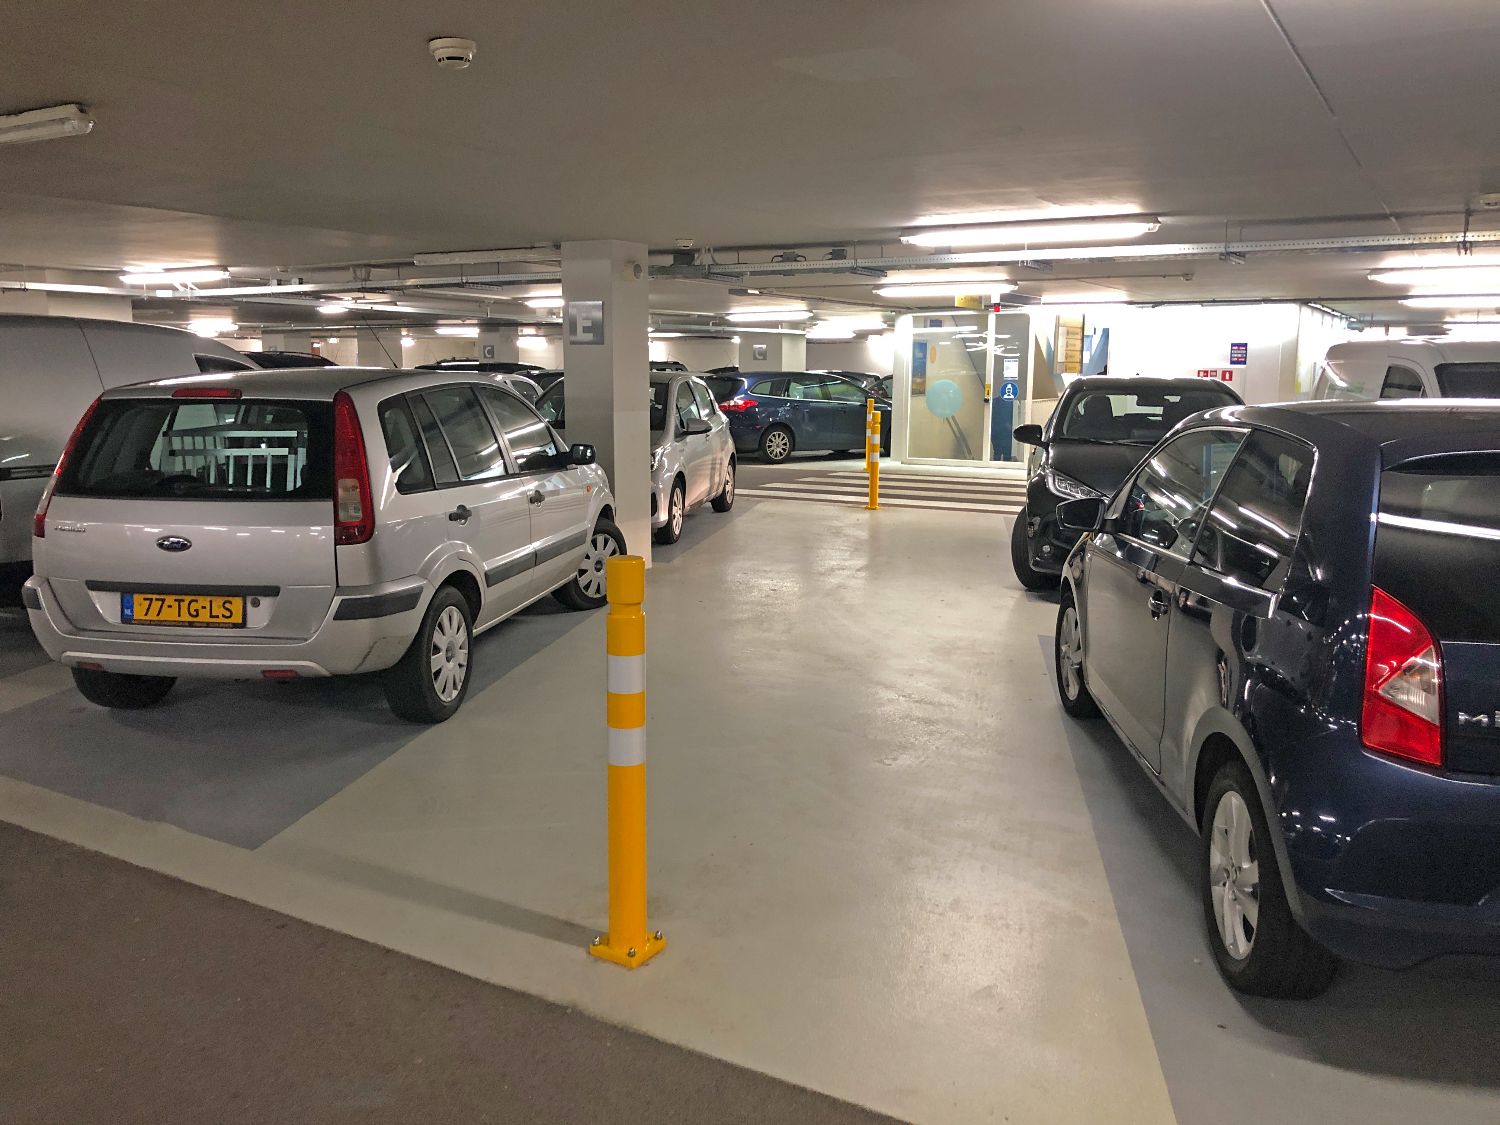 Flexibele aanrijbeveiliging in parkeergarage P2 VUmc van Amsterdam UMC.